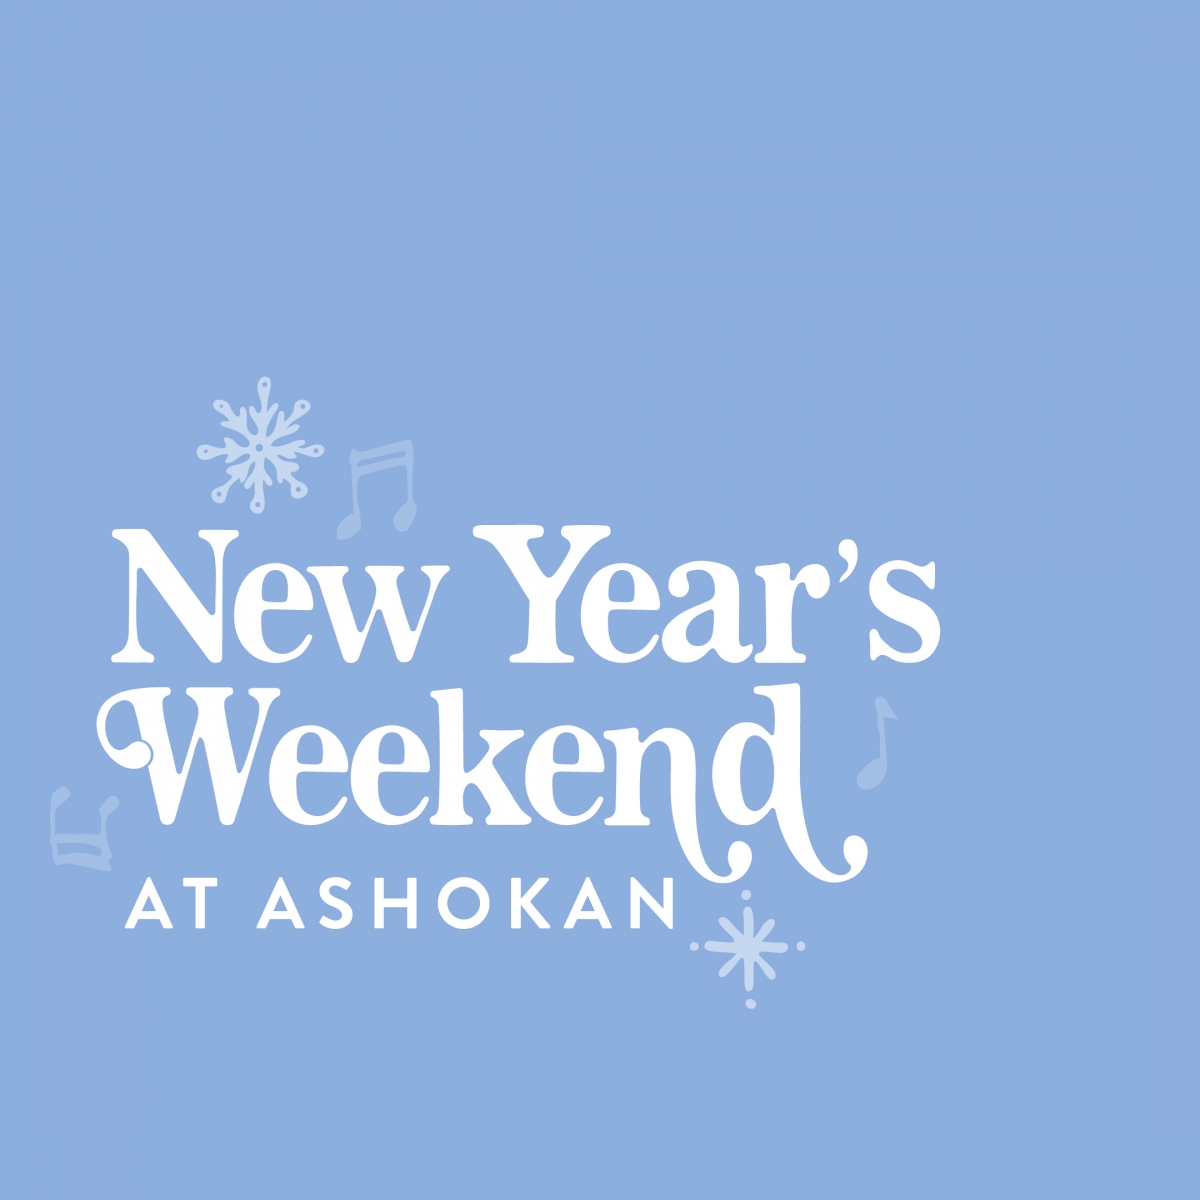 New Year's Weekend at Ashokan